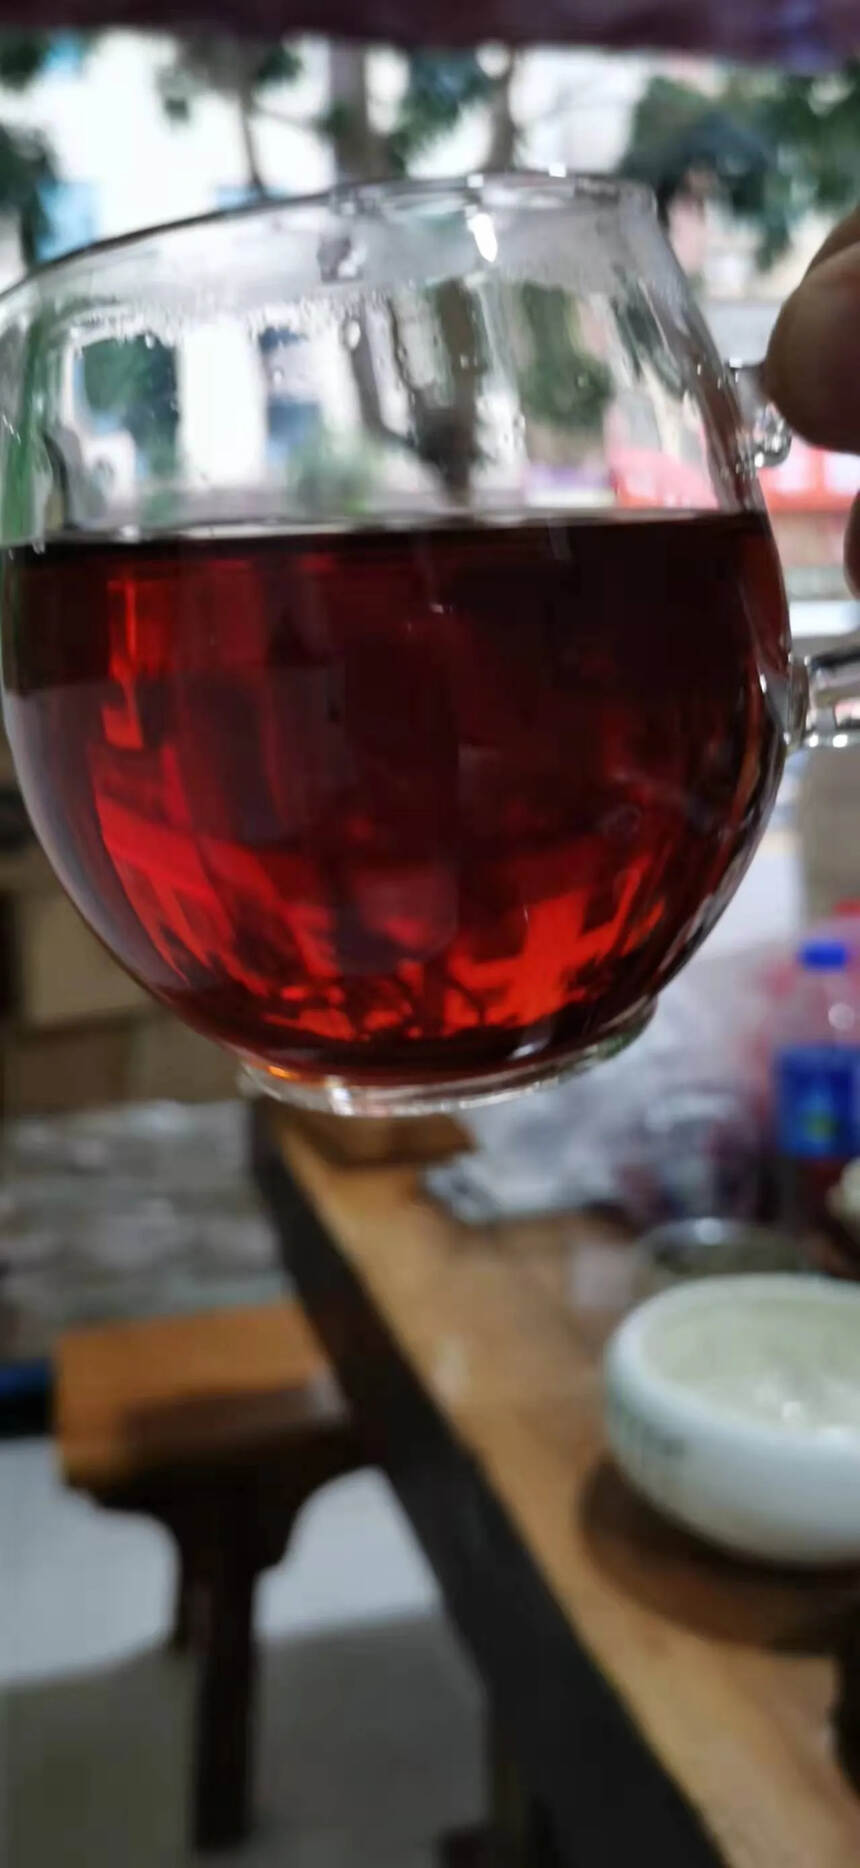 2016年布朗山头春发酵。点赞评论送茶样品试喝。#普